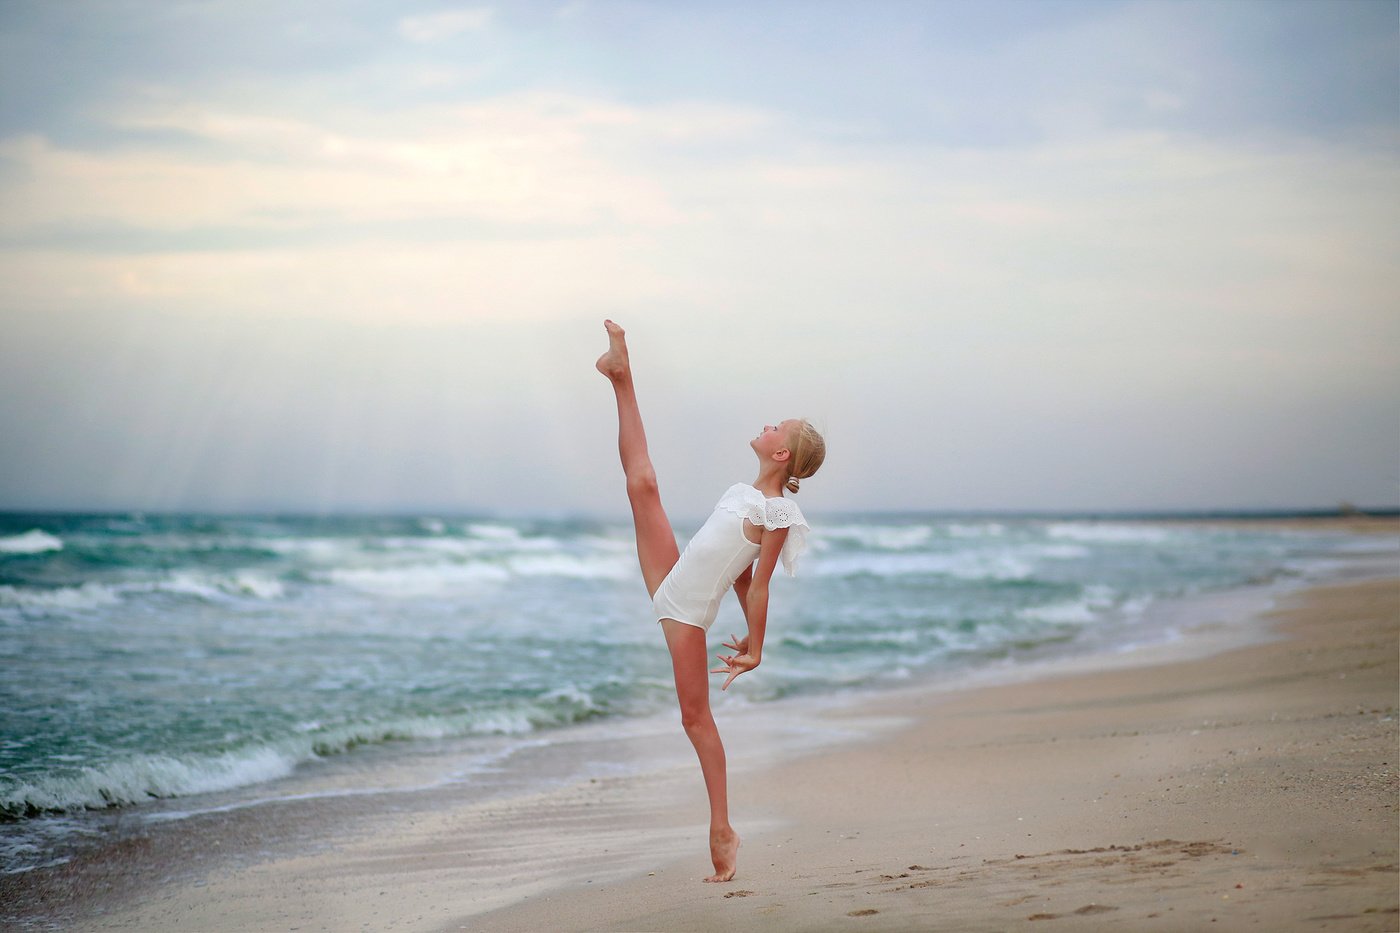 Миленькая танцовщица тренируется на пляже голышом